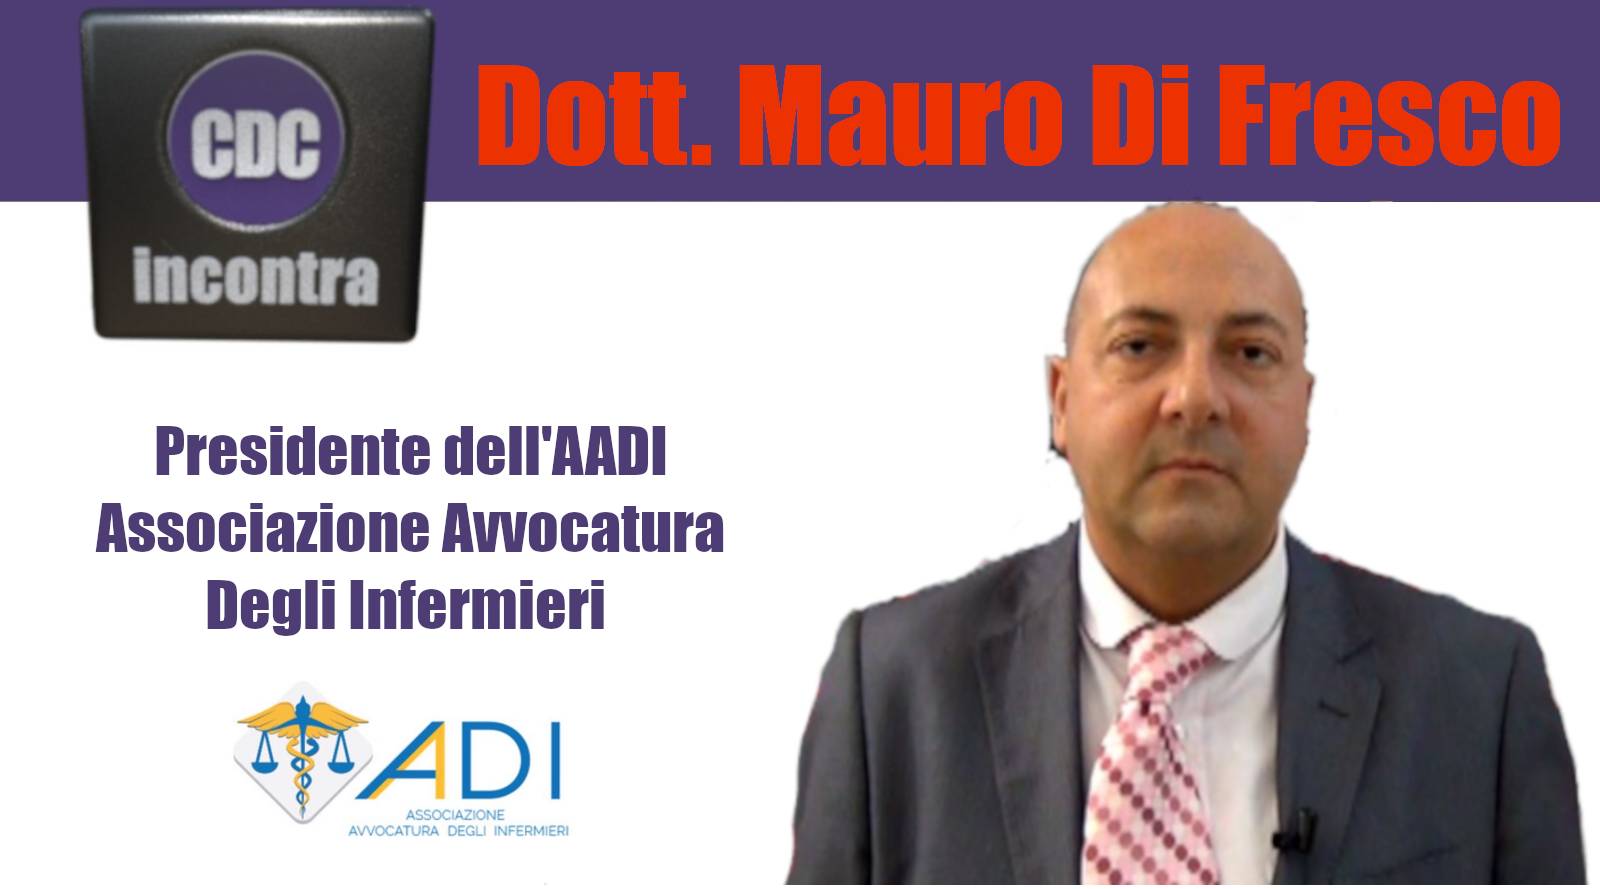 CDC Incontra - Dott. Mauro Di Fresco